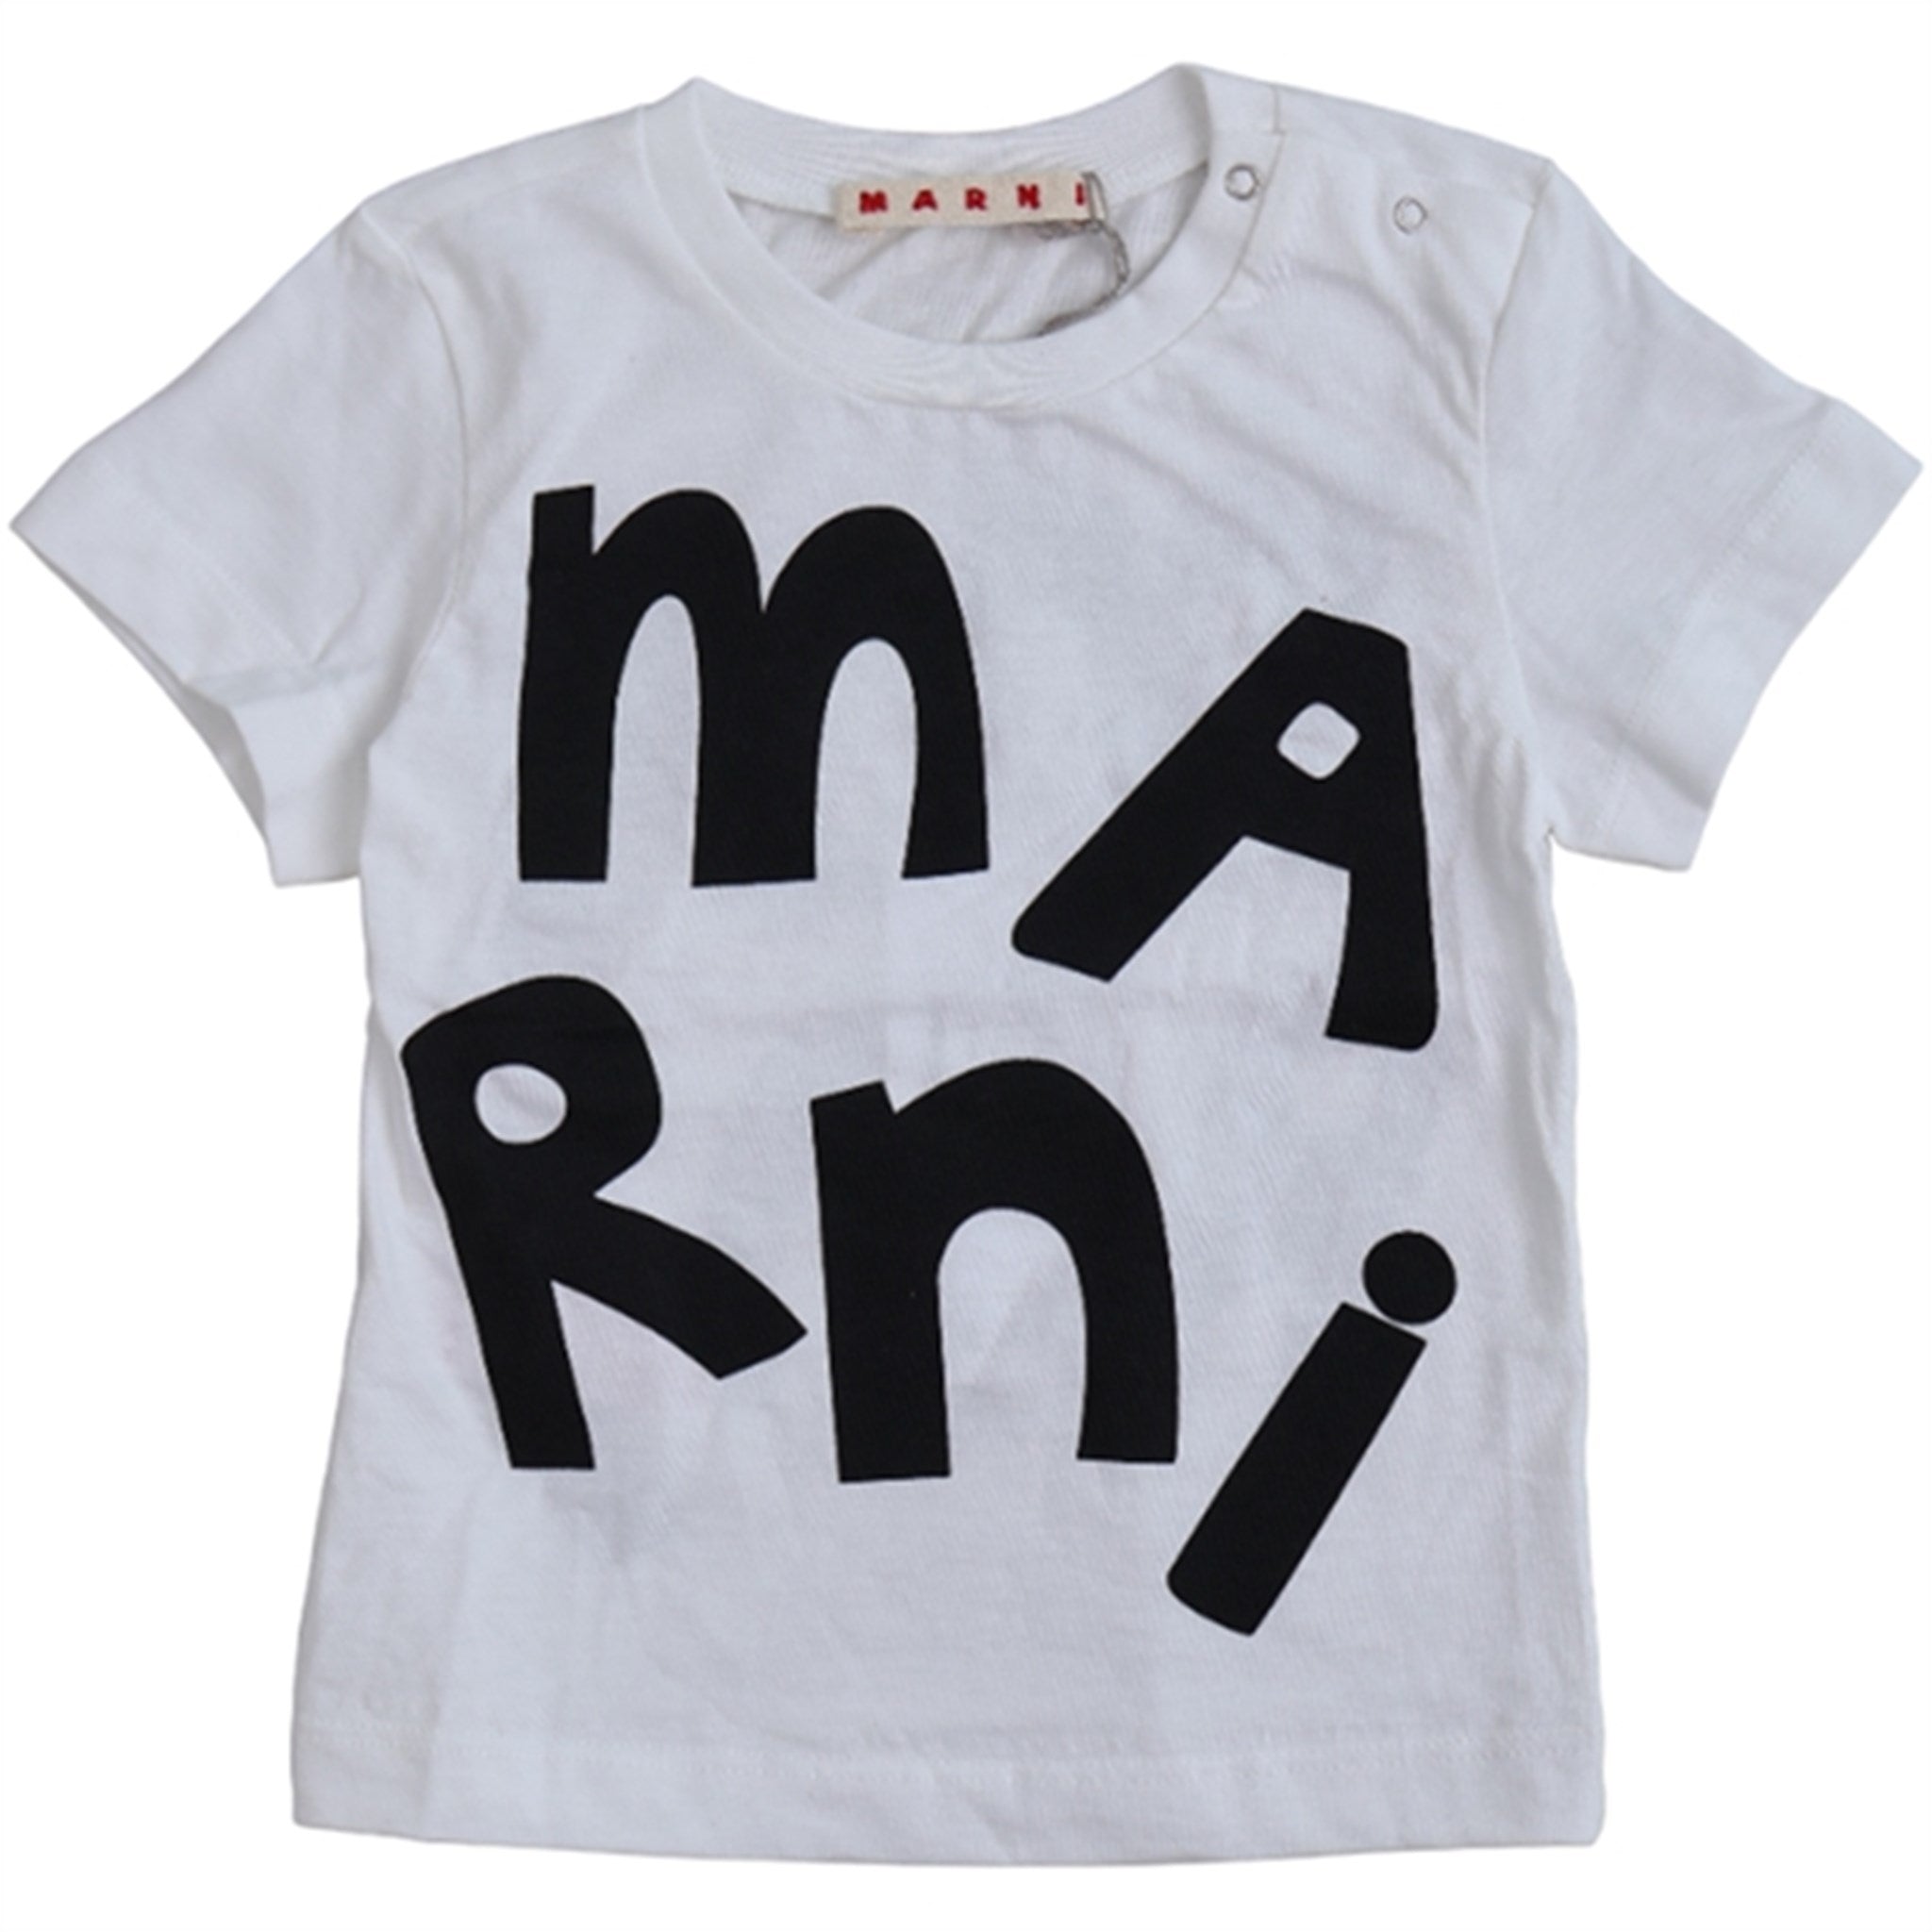 Marni White T-shirt